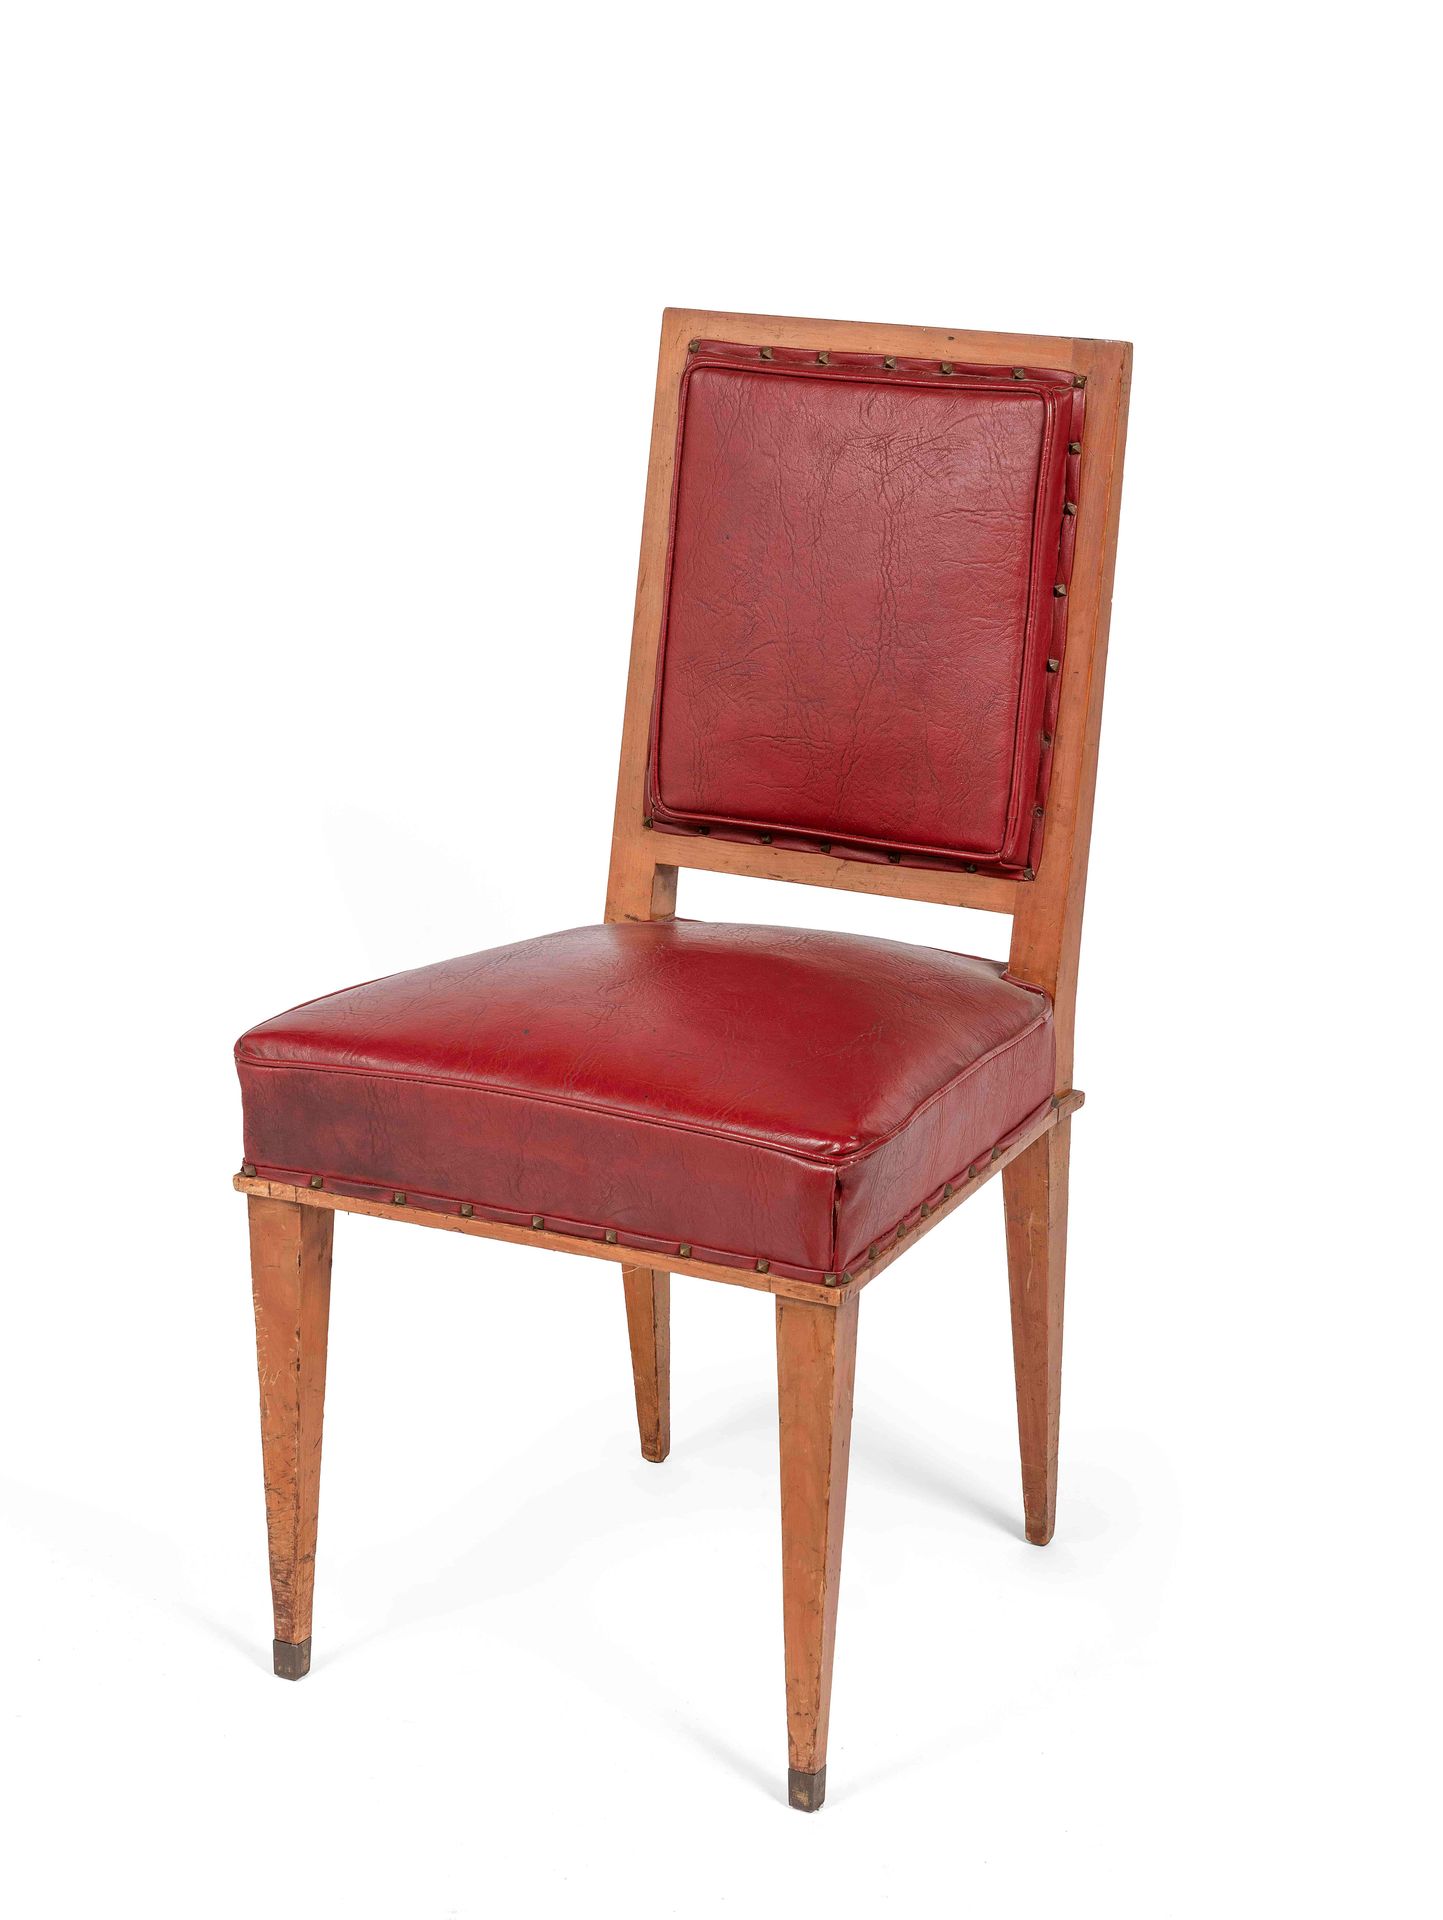 Null Stuhl aus Naturholz mit verjüngten Beinen. Polsterung aus rotem Kunstleder.&hellip;